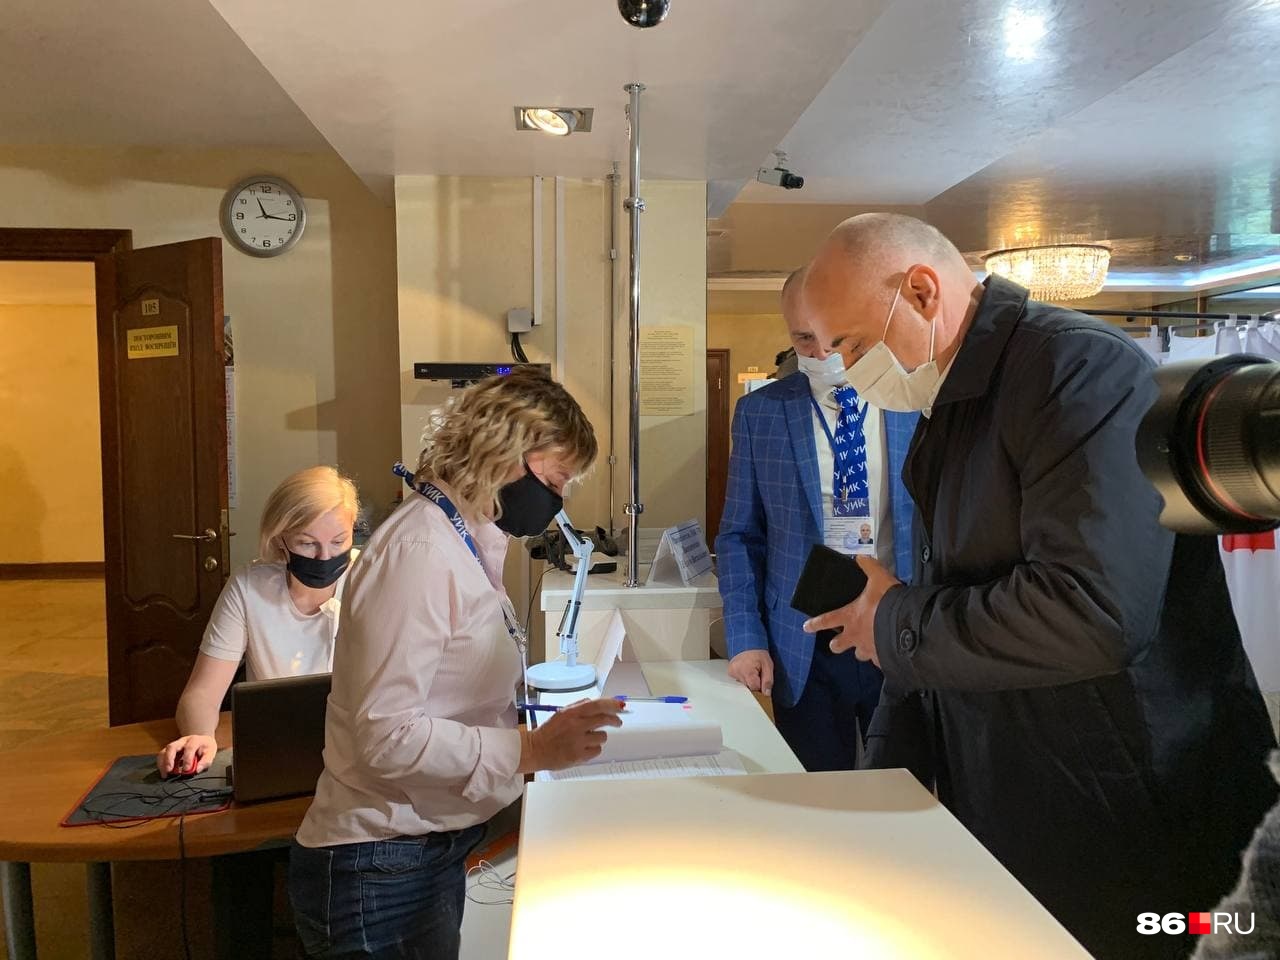 Андрей Филатов регистрируется на участке, чтобы получить бюллетени для голосования